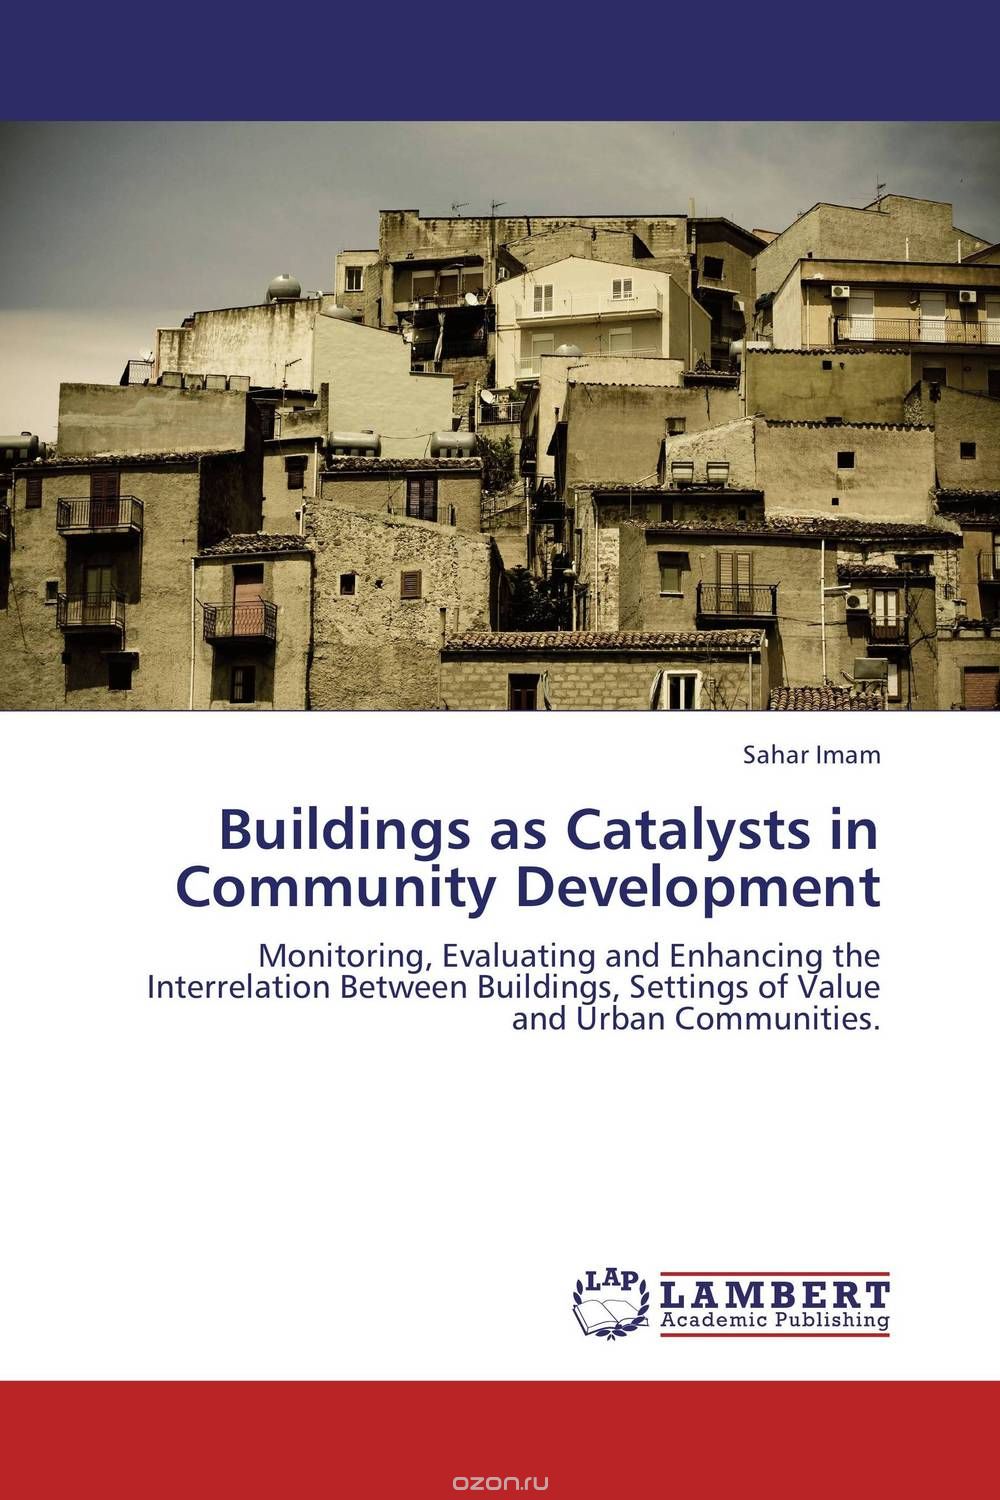 Скачать книгу "Buildings as Catalysts in Community Development"